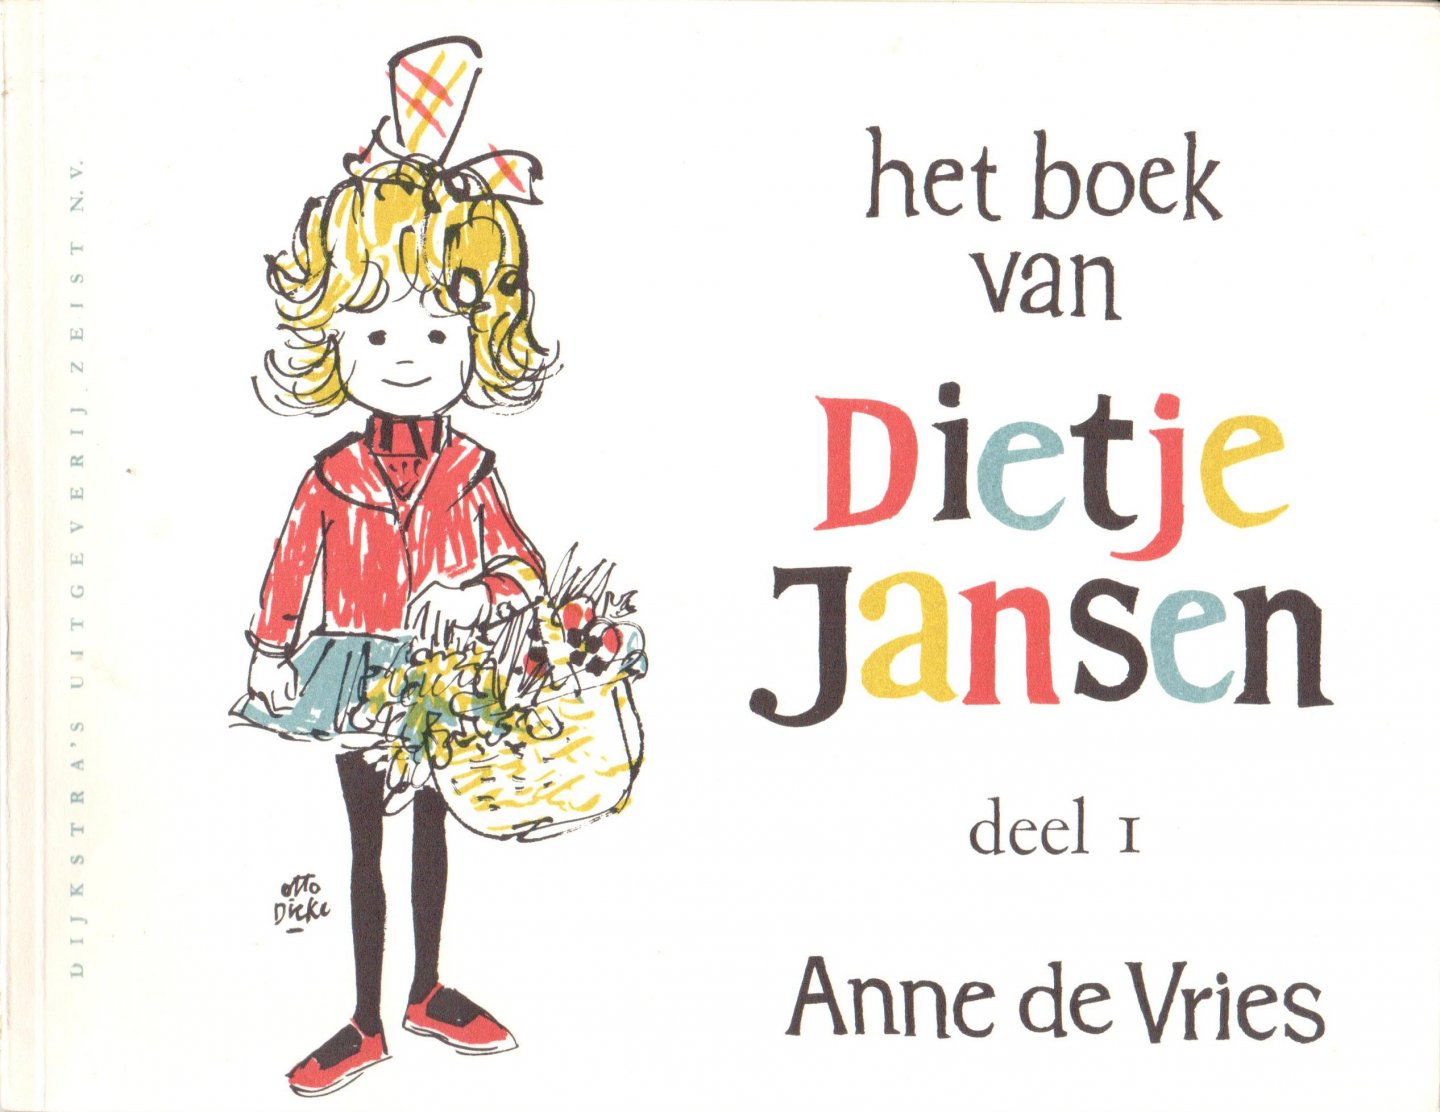 Vries de, Anne - Het boek van Dietje Jansen, deel 2